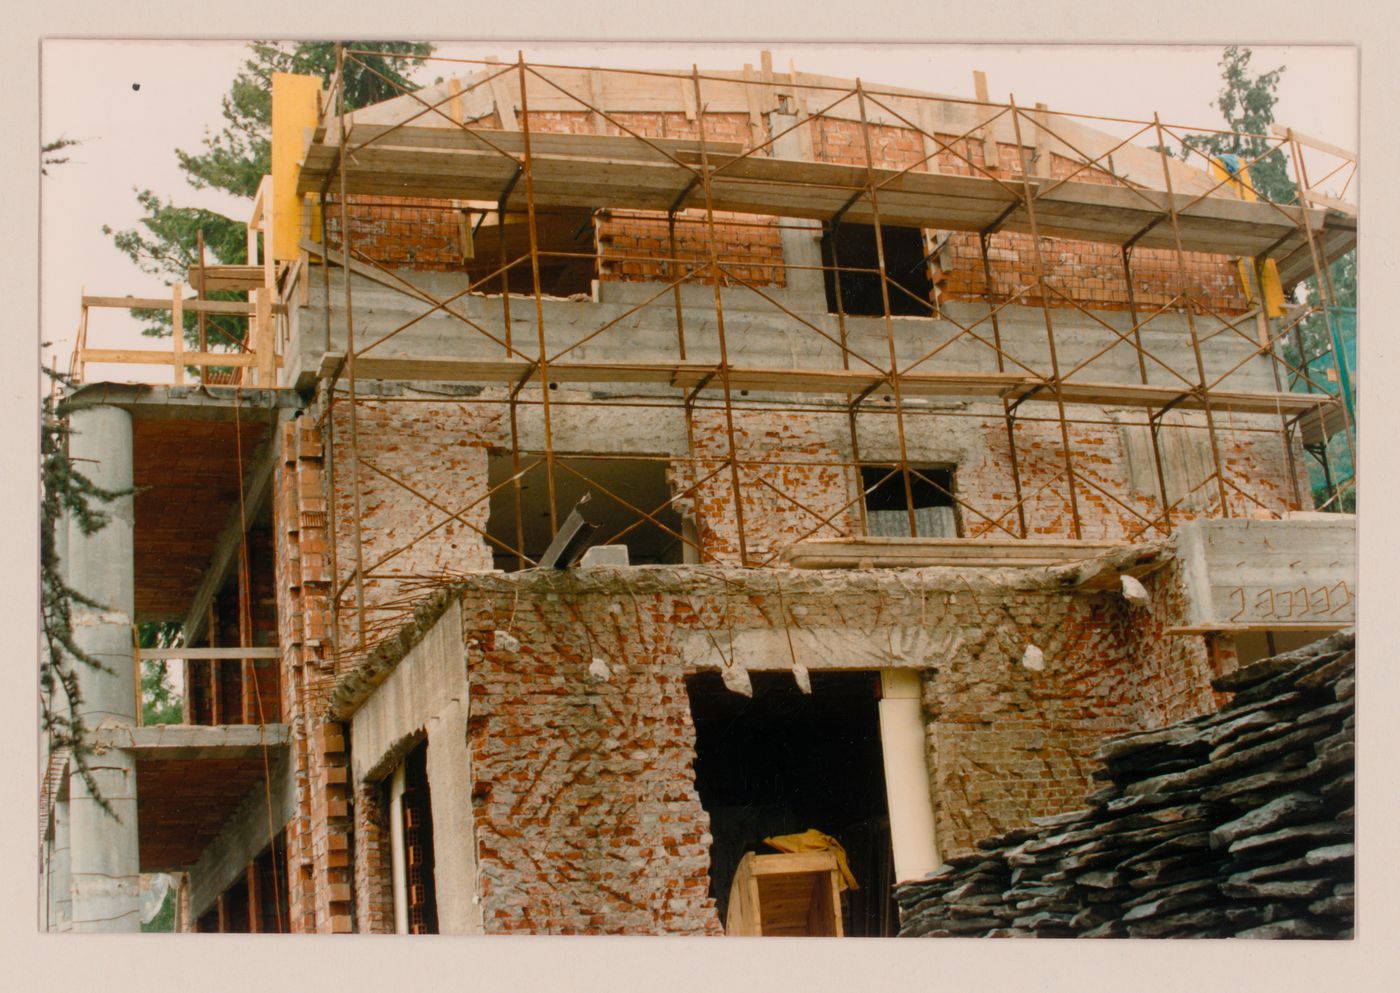 View of restoration of Ristrutturazione Casa Alessi, Verbania, Italy